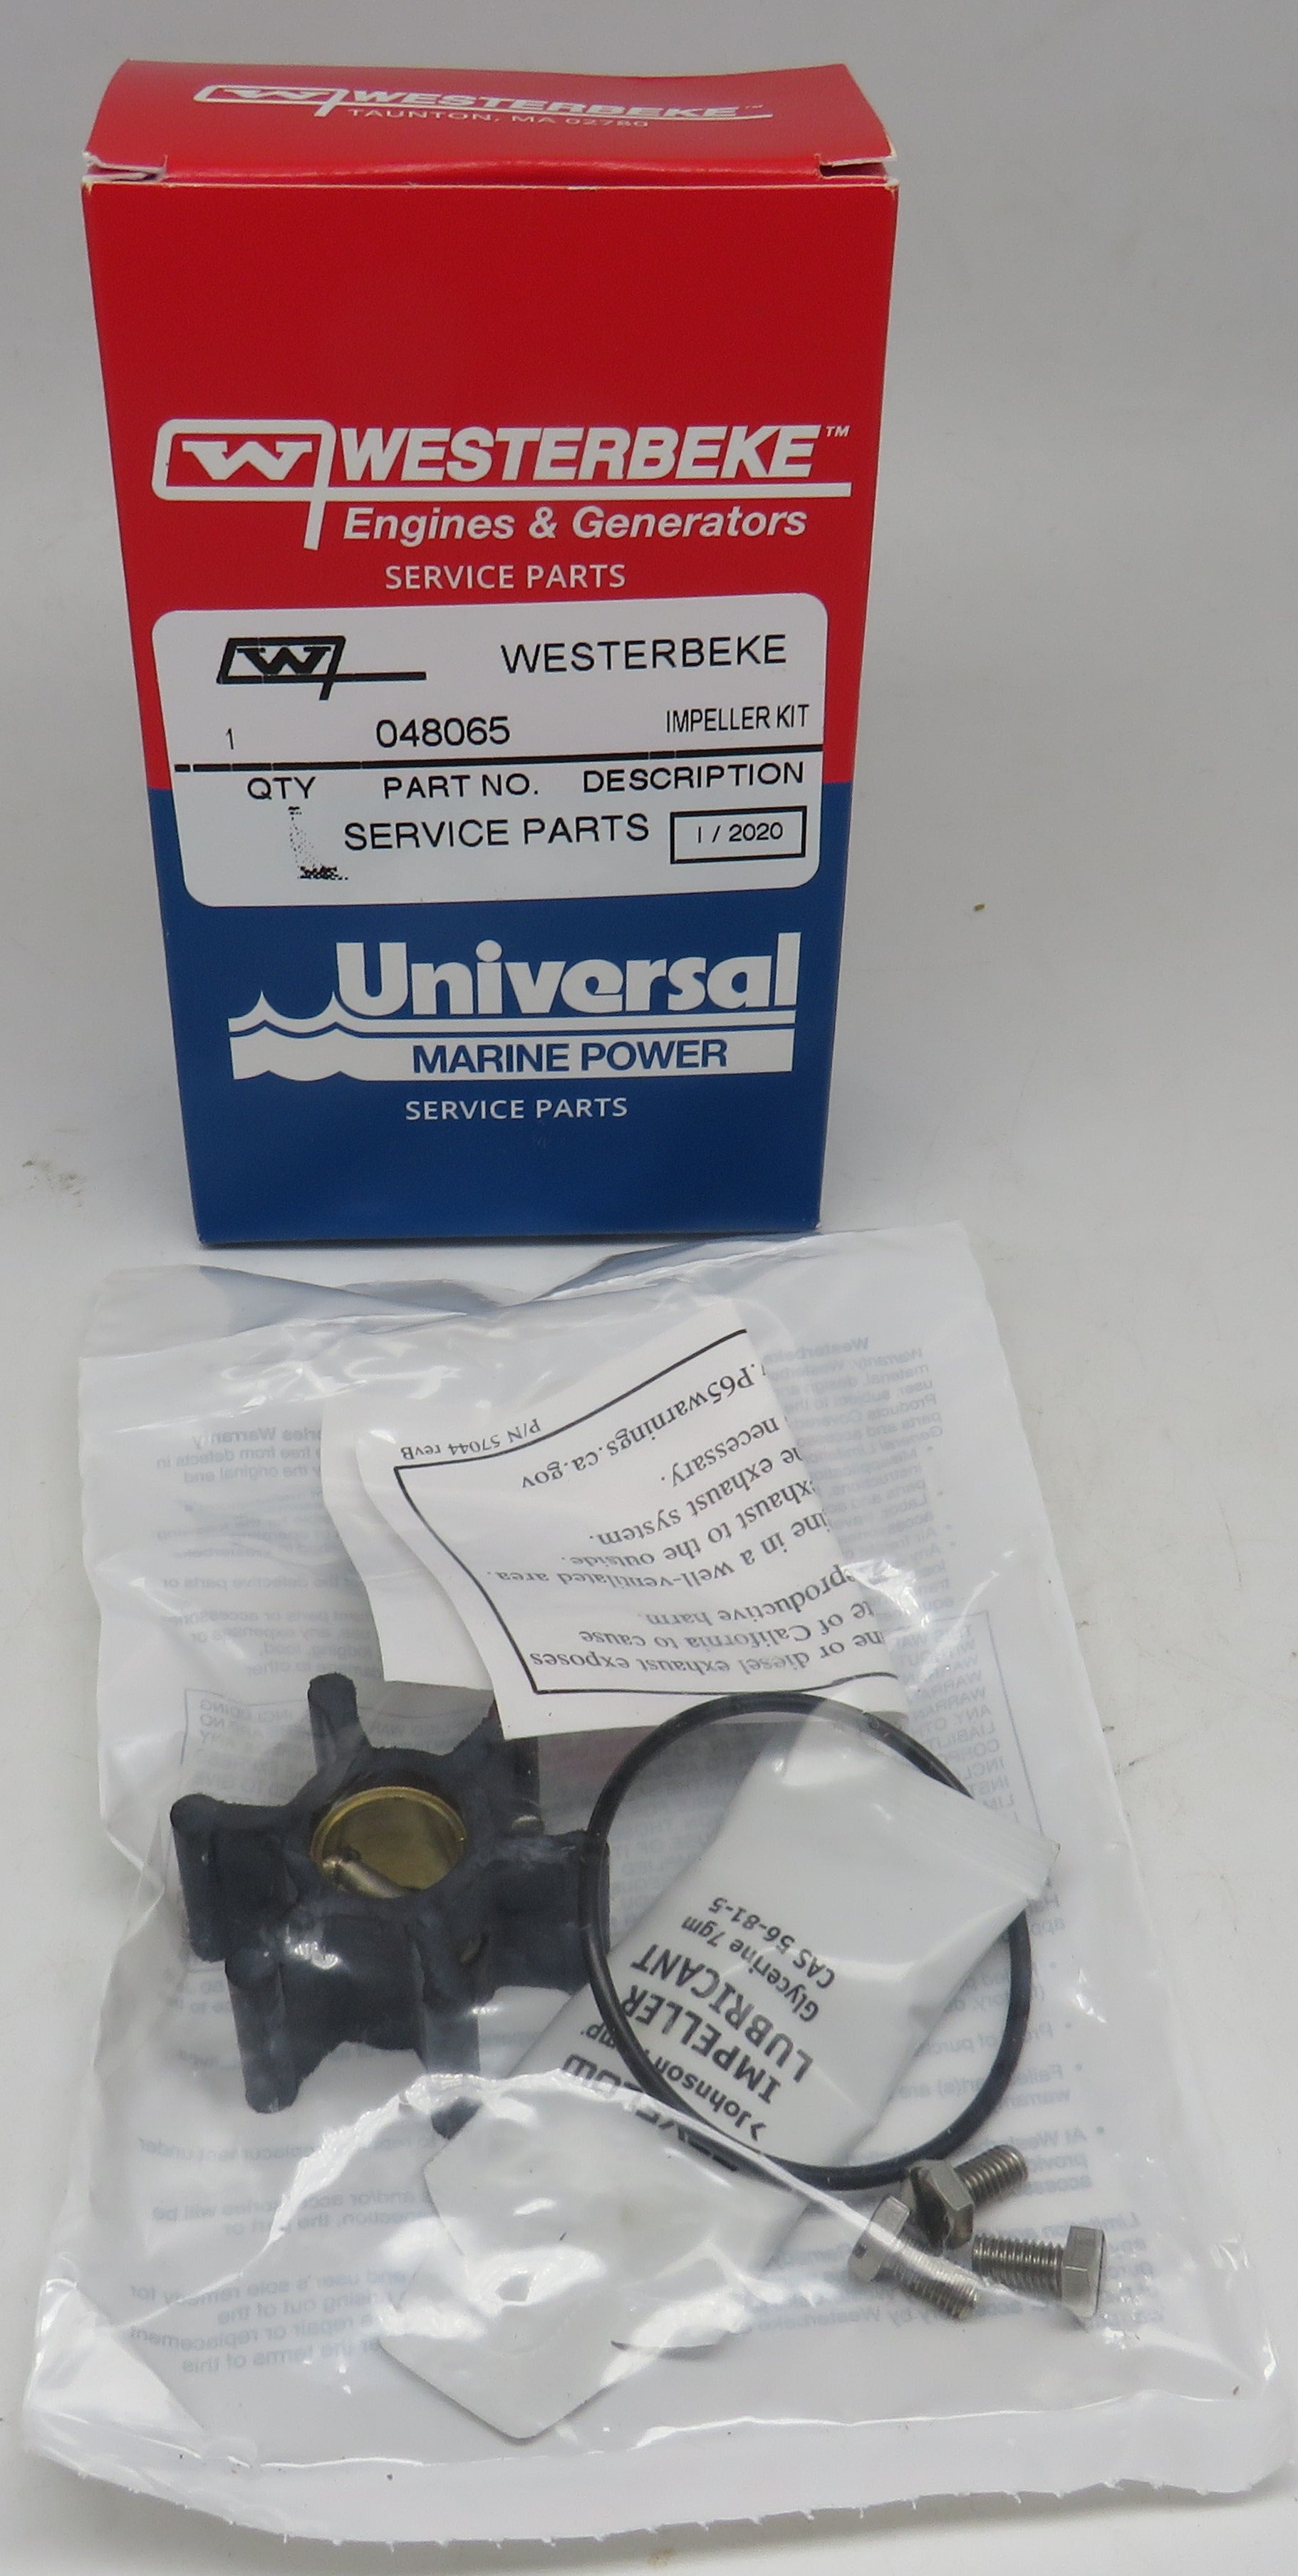 Westerbeke 48065 Impeller Service Kit MVP3 (46814 Pump) Universal Marine Power